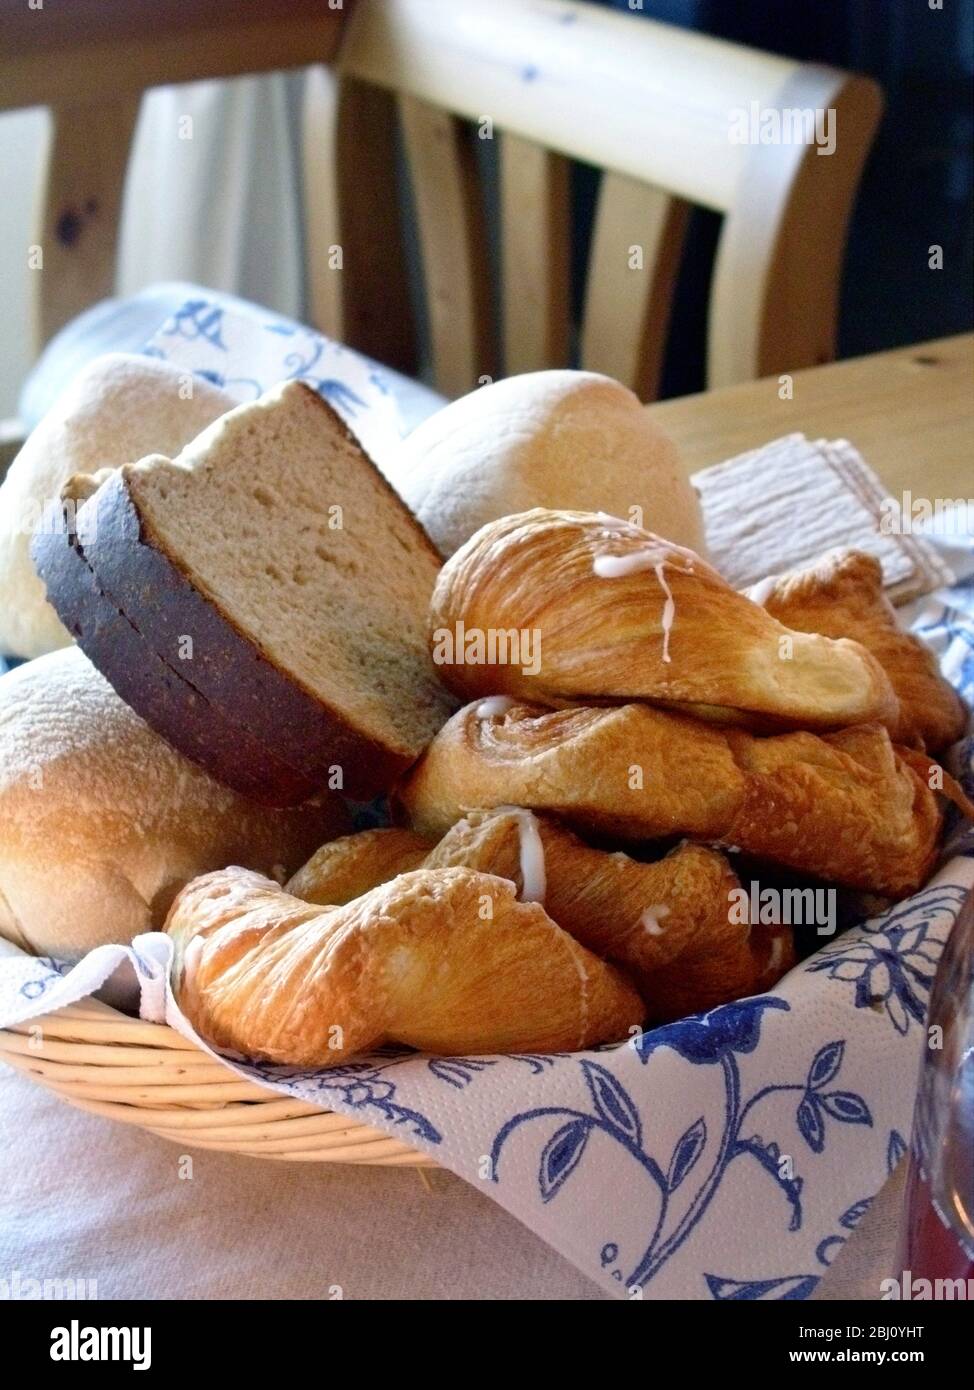 Una collezione di vari tipi di pane e pasticcini nel cestino sul tavolo. Svezia - Foto Stock